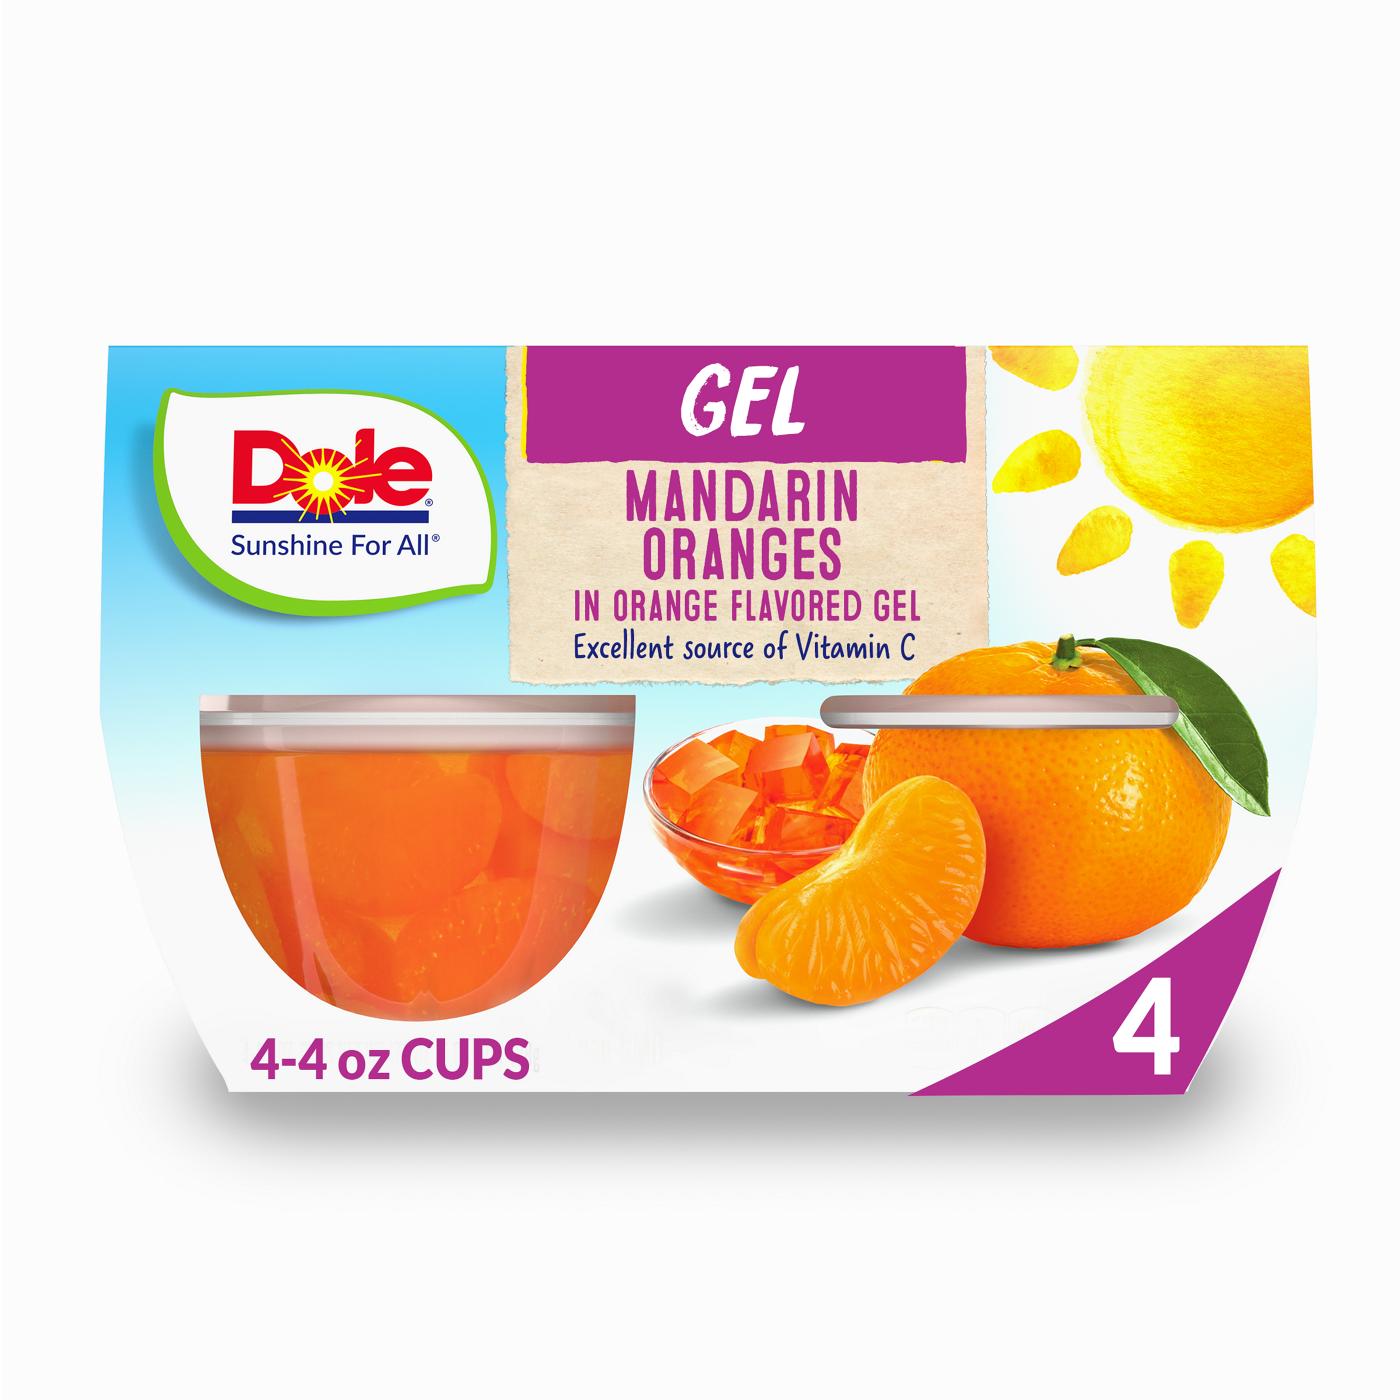 Dole Fruit Bowls - Mandarins in Orange Flavored Gel; image 1 of 5